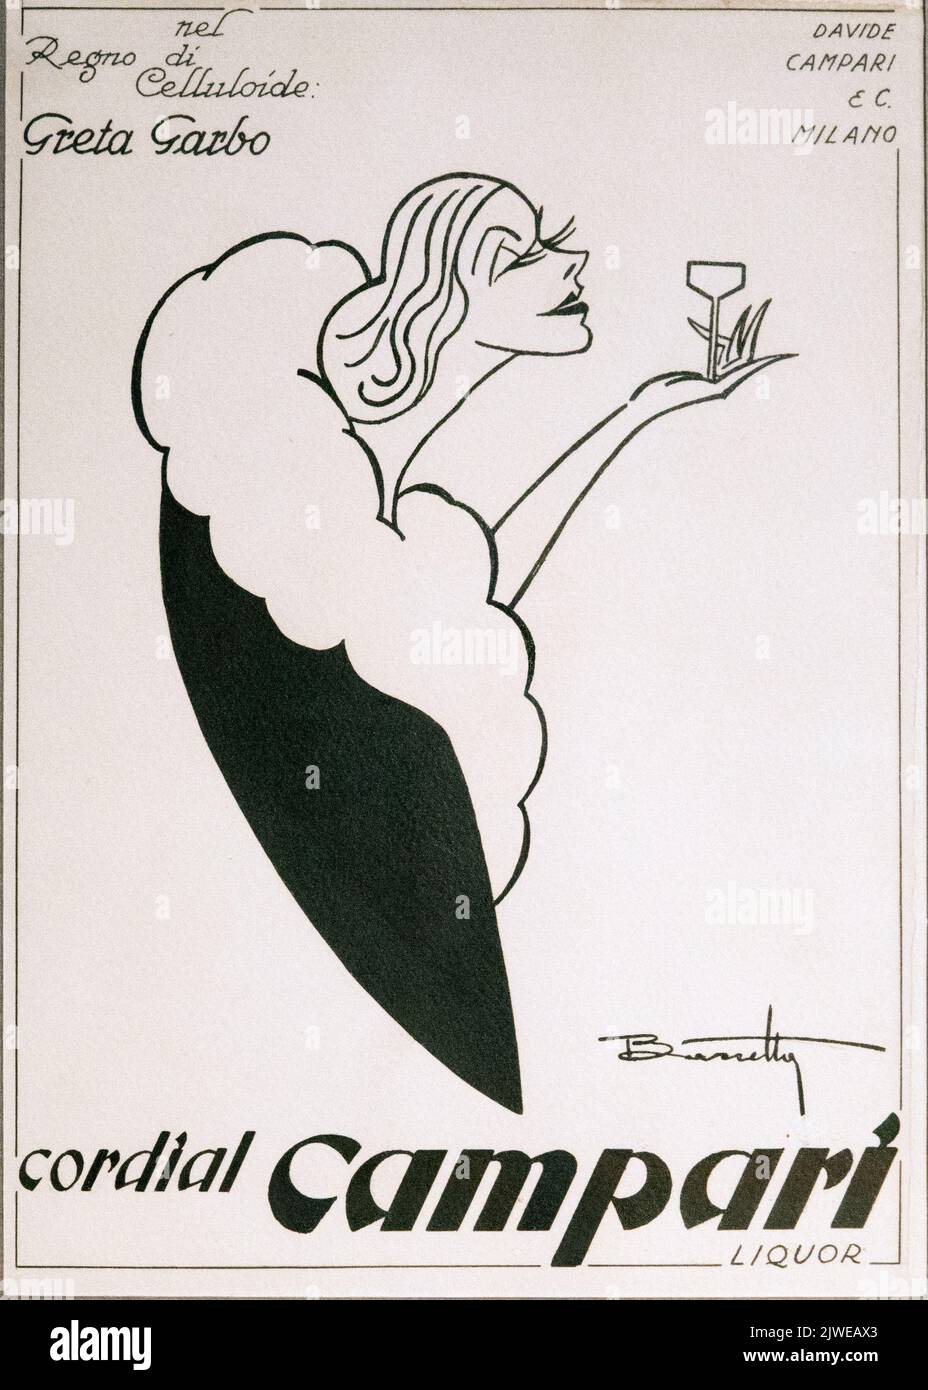 Vintage pubblicità di Cordial Campari in bianco e nero. Immagine scattata alla Galleria Campari vicino a Milano. Foto Stock